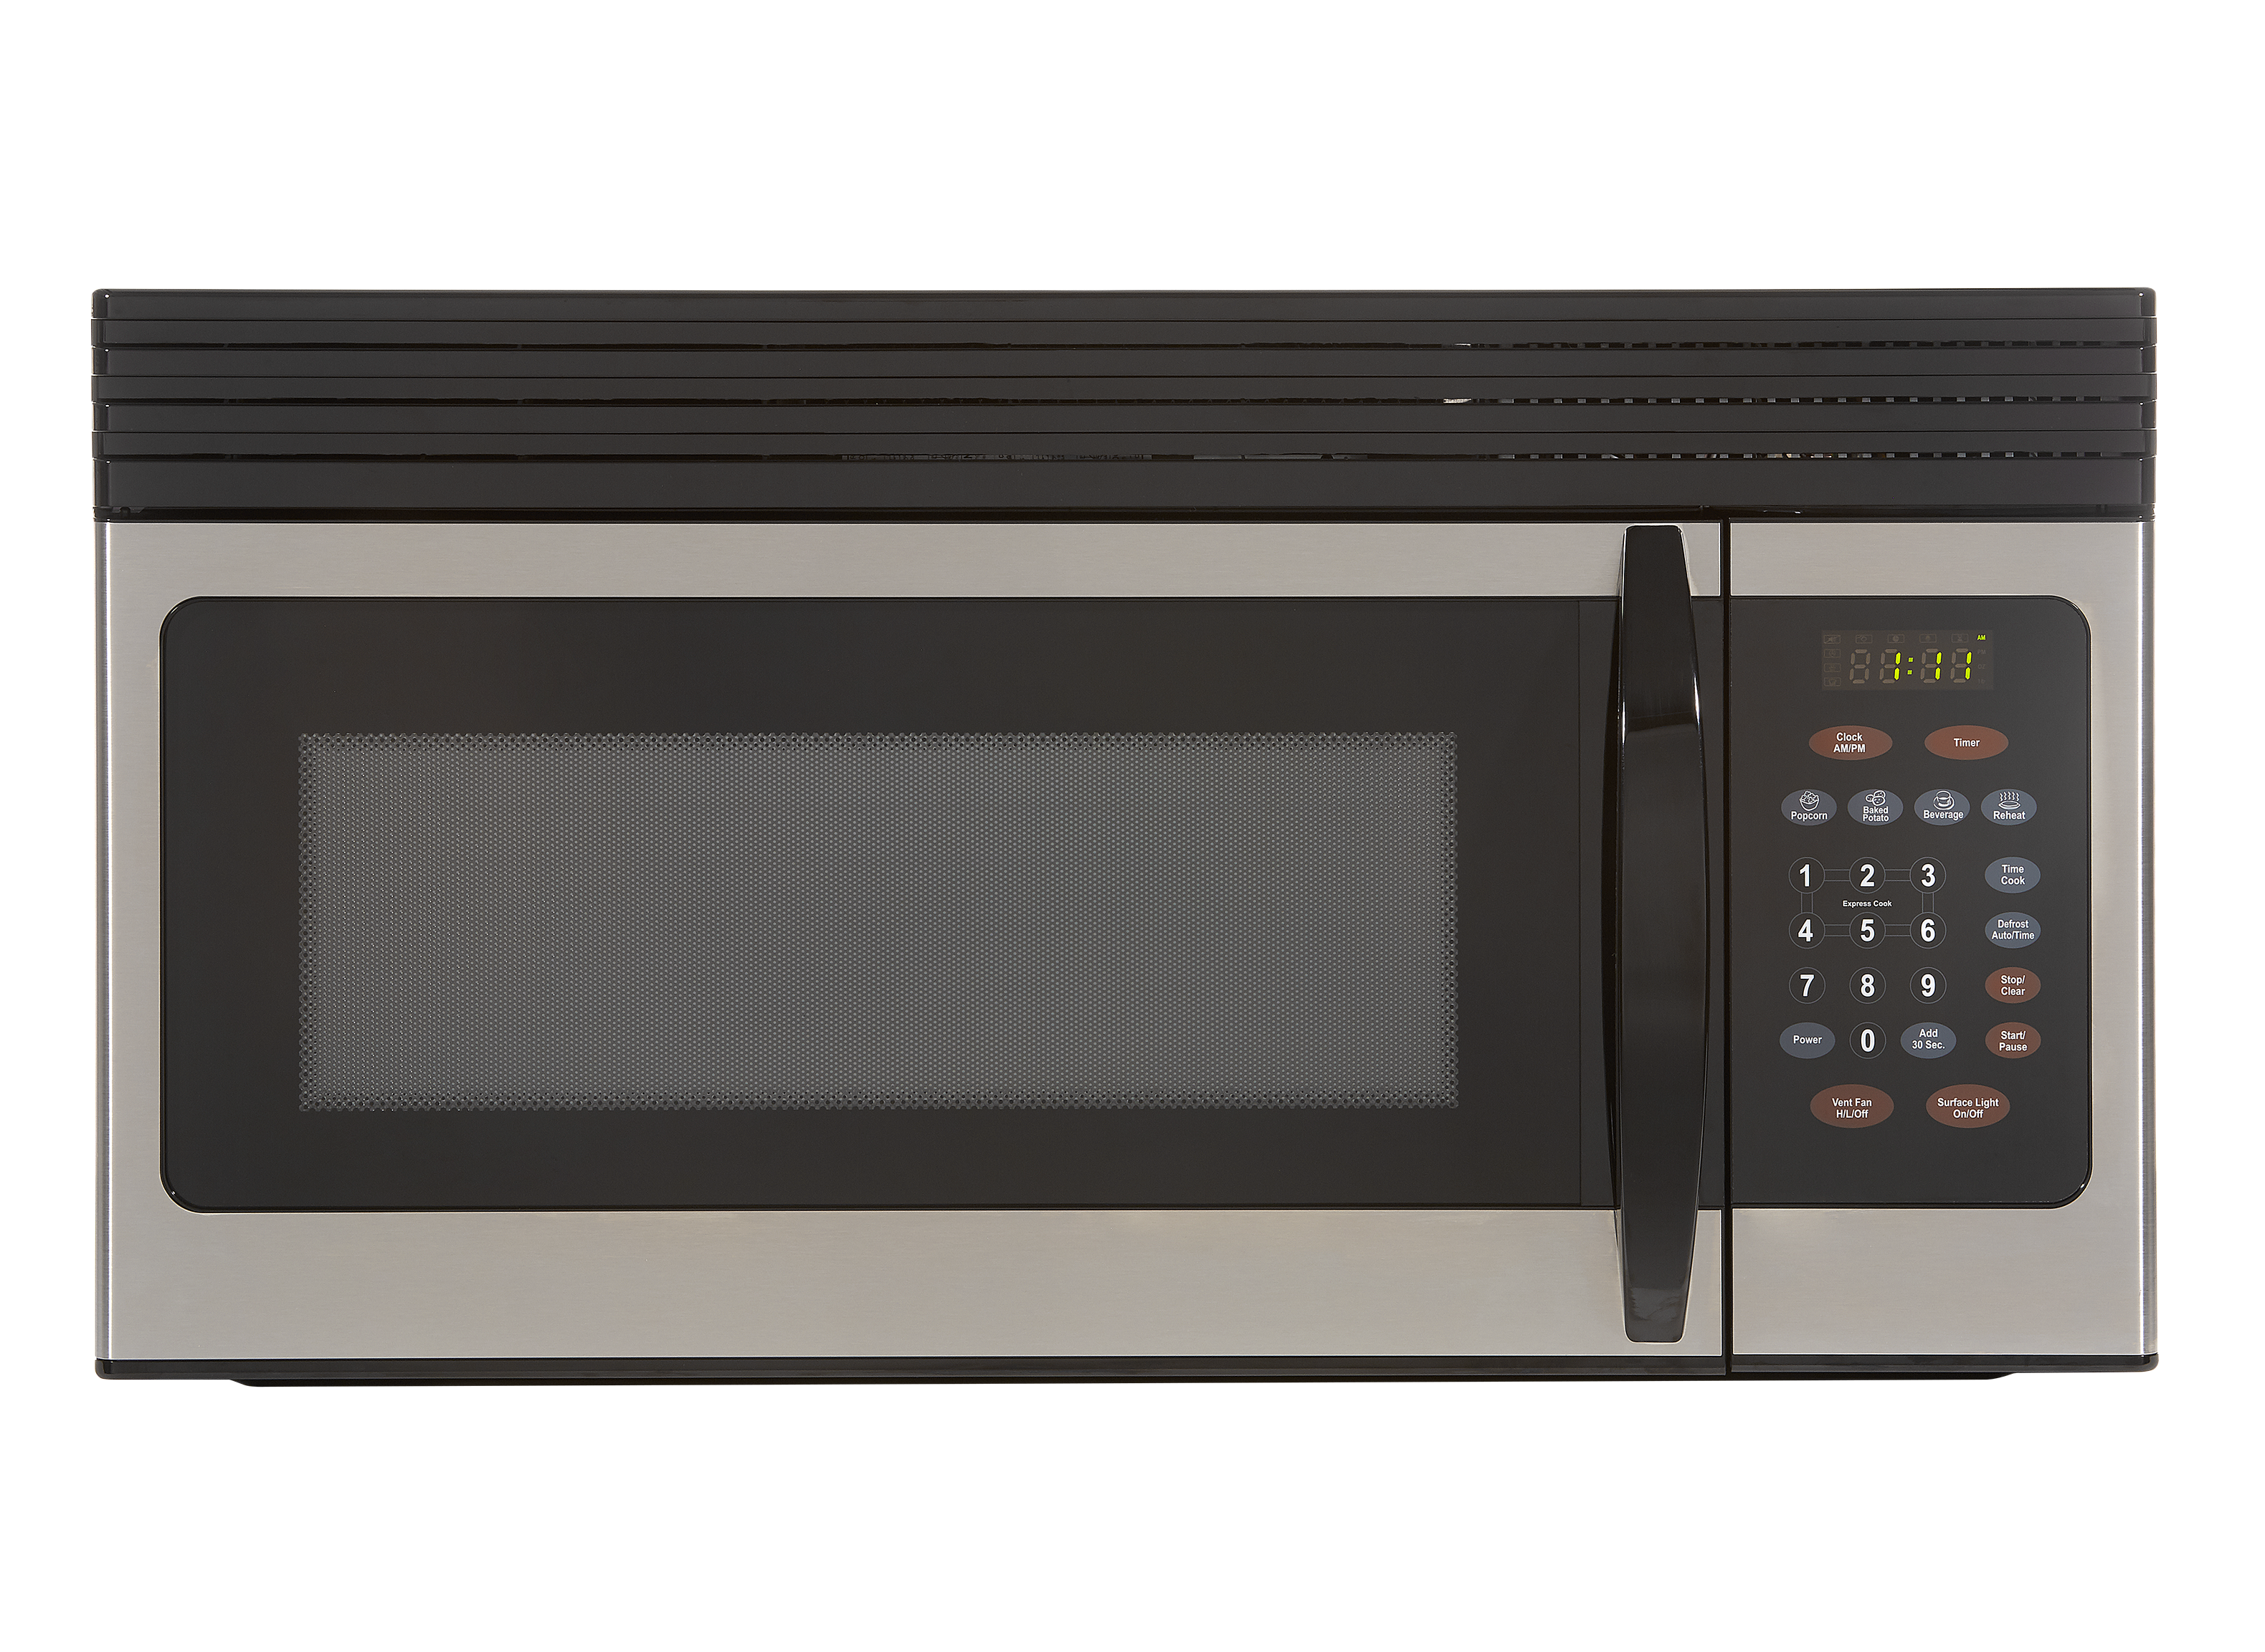  BLACK+DECKER EM044KB19 Over The Range Microwave Oven